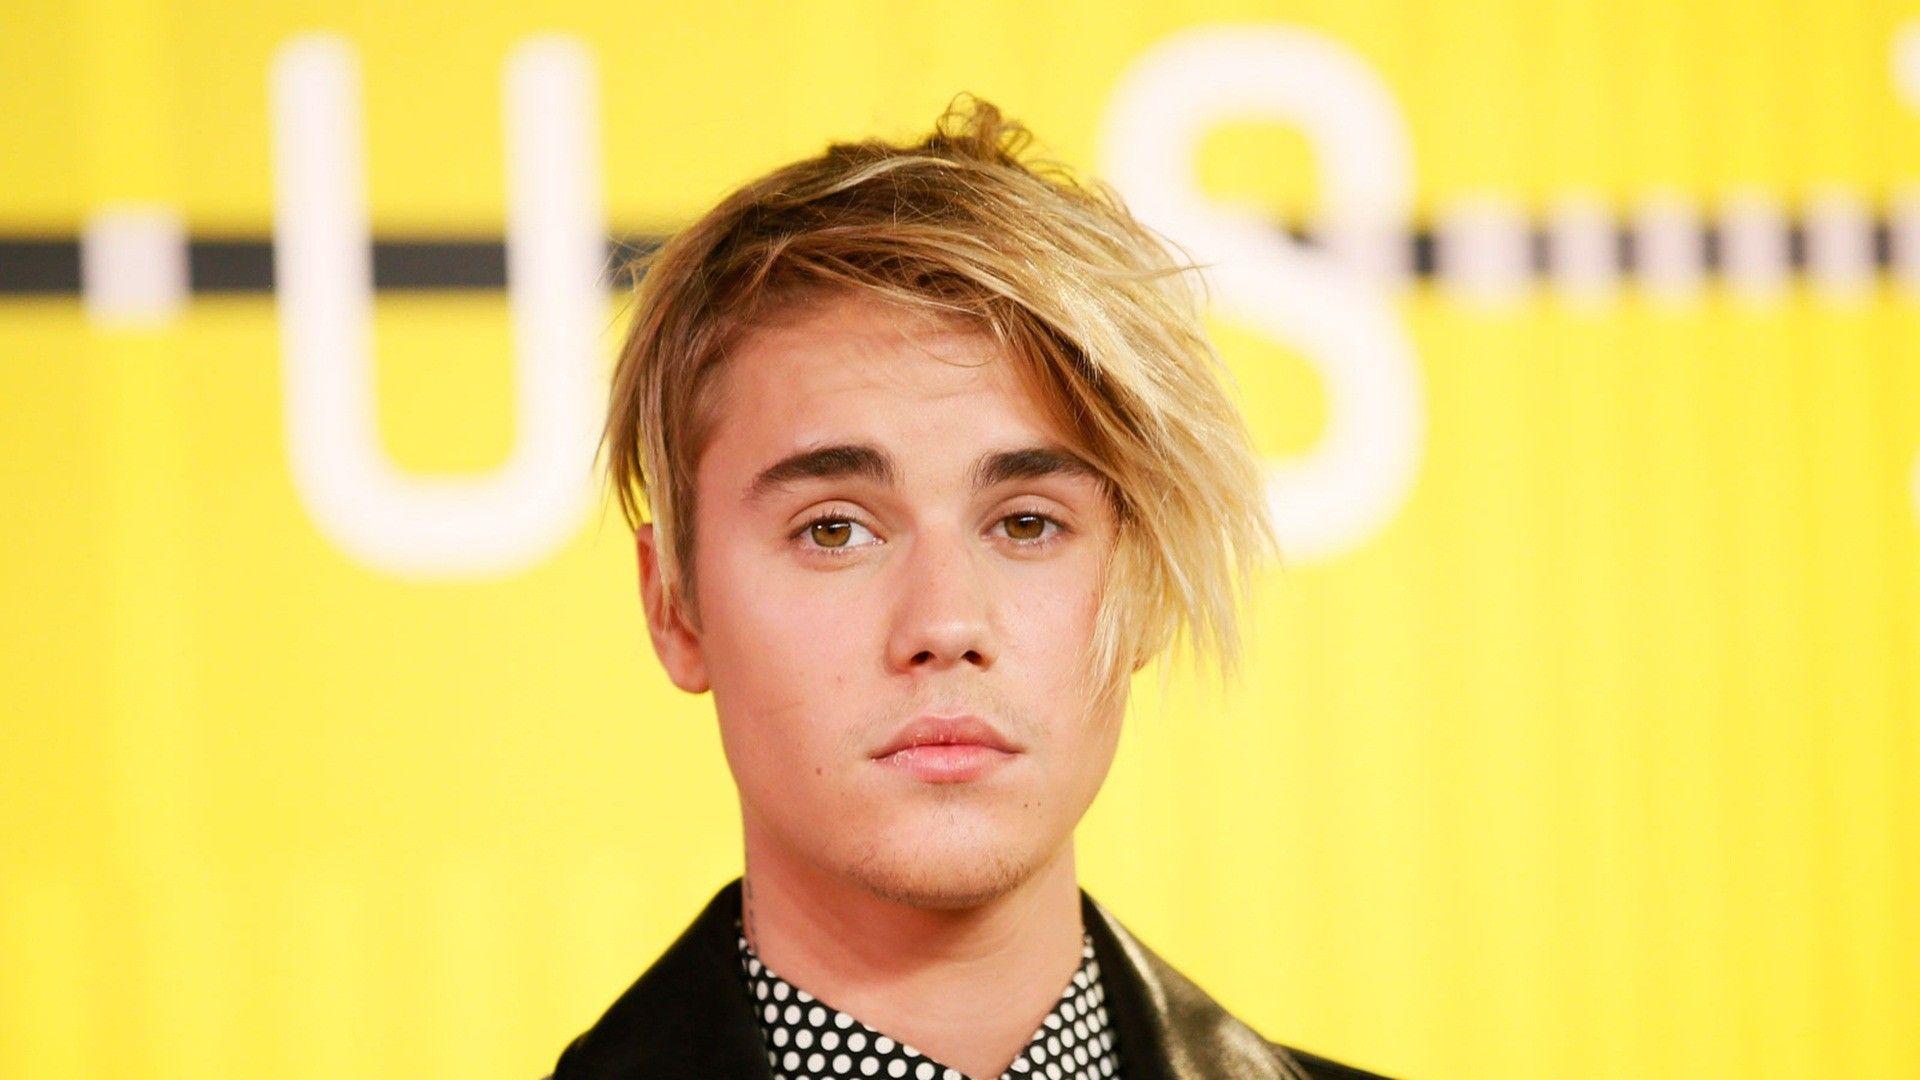 Justin Bieber Wallpaper HD HD Justin Bieber 2015